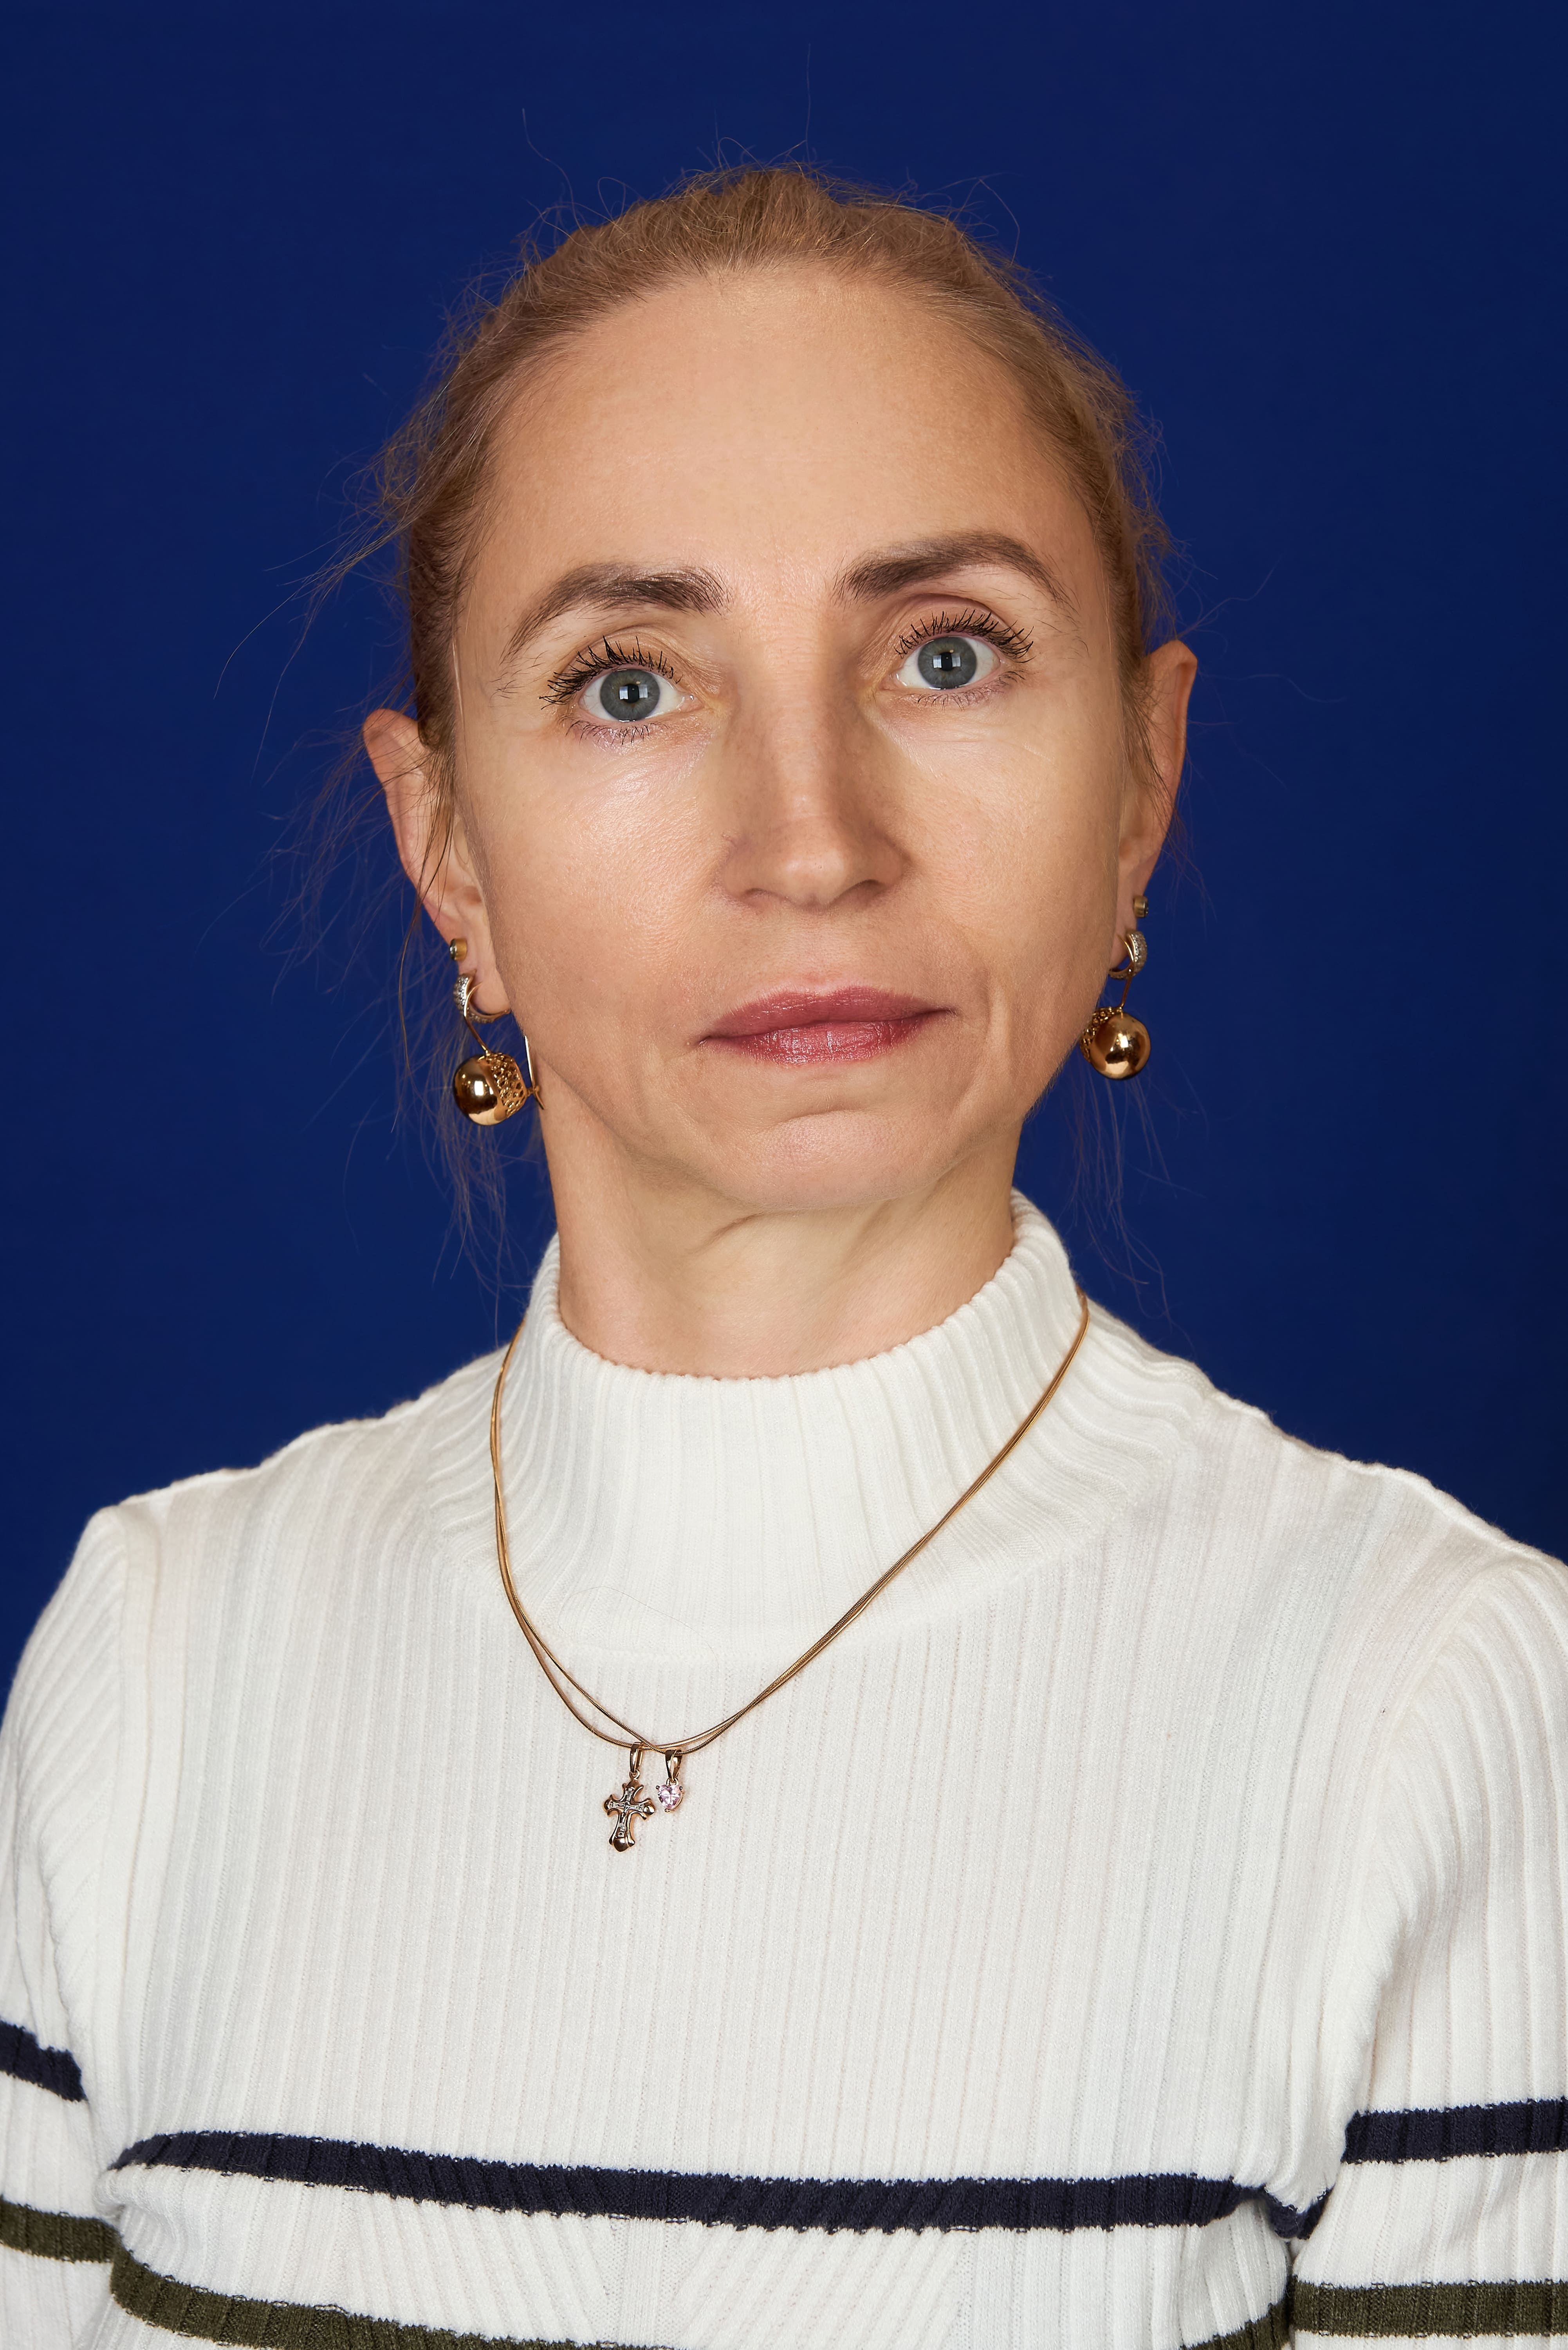 Педагогический работник Смертина Наталия Аркадьевна, воспитатель.